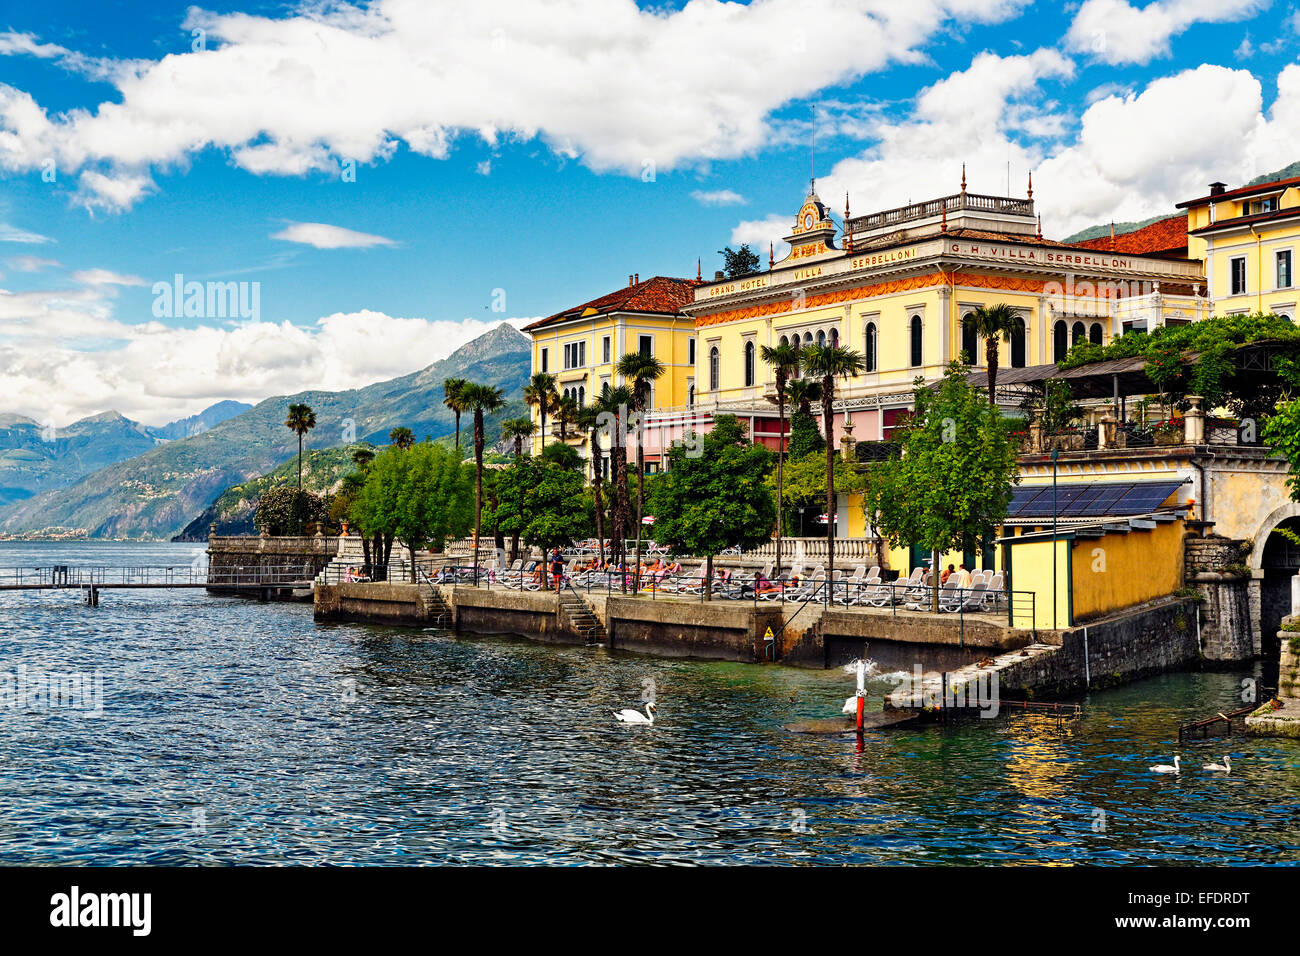 Lakeshore View with a Hotel, Grand Hotel Villa Serbelloni, Bellagio, Lake Como, Italy Stock Photo